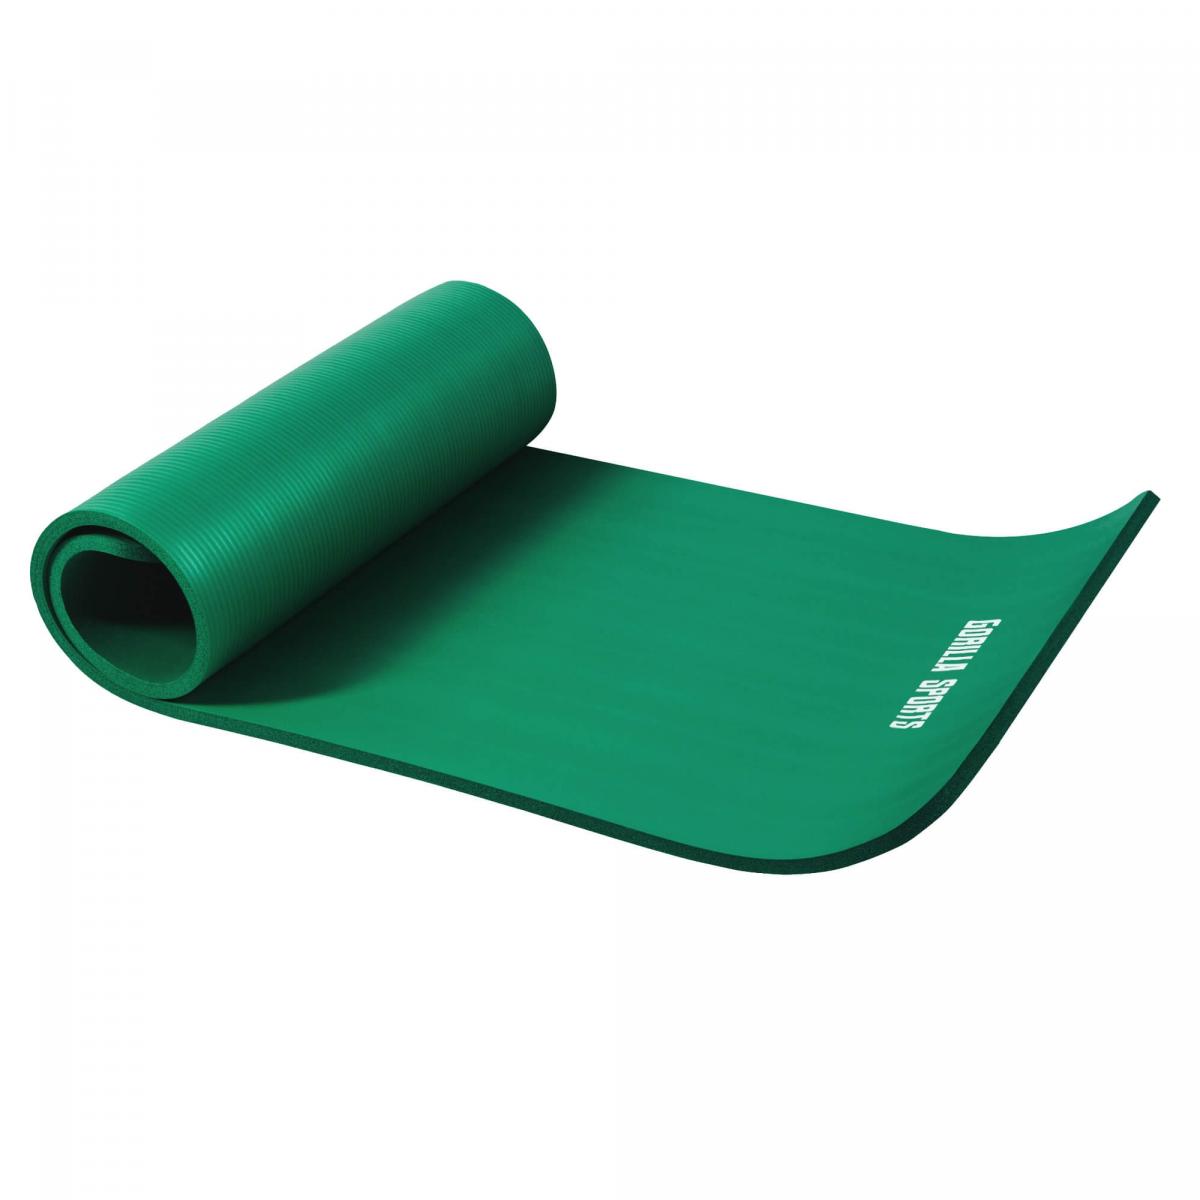 Petit tapis de yoga en mousse - 190 x 60 x 1,5 cm (Yoga - Pilates - sport Ã domicile) Vert